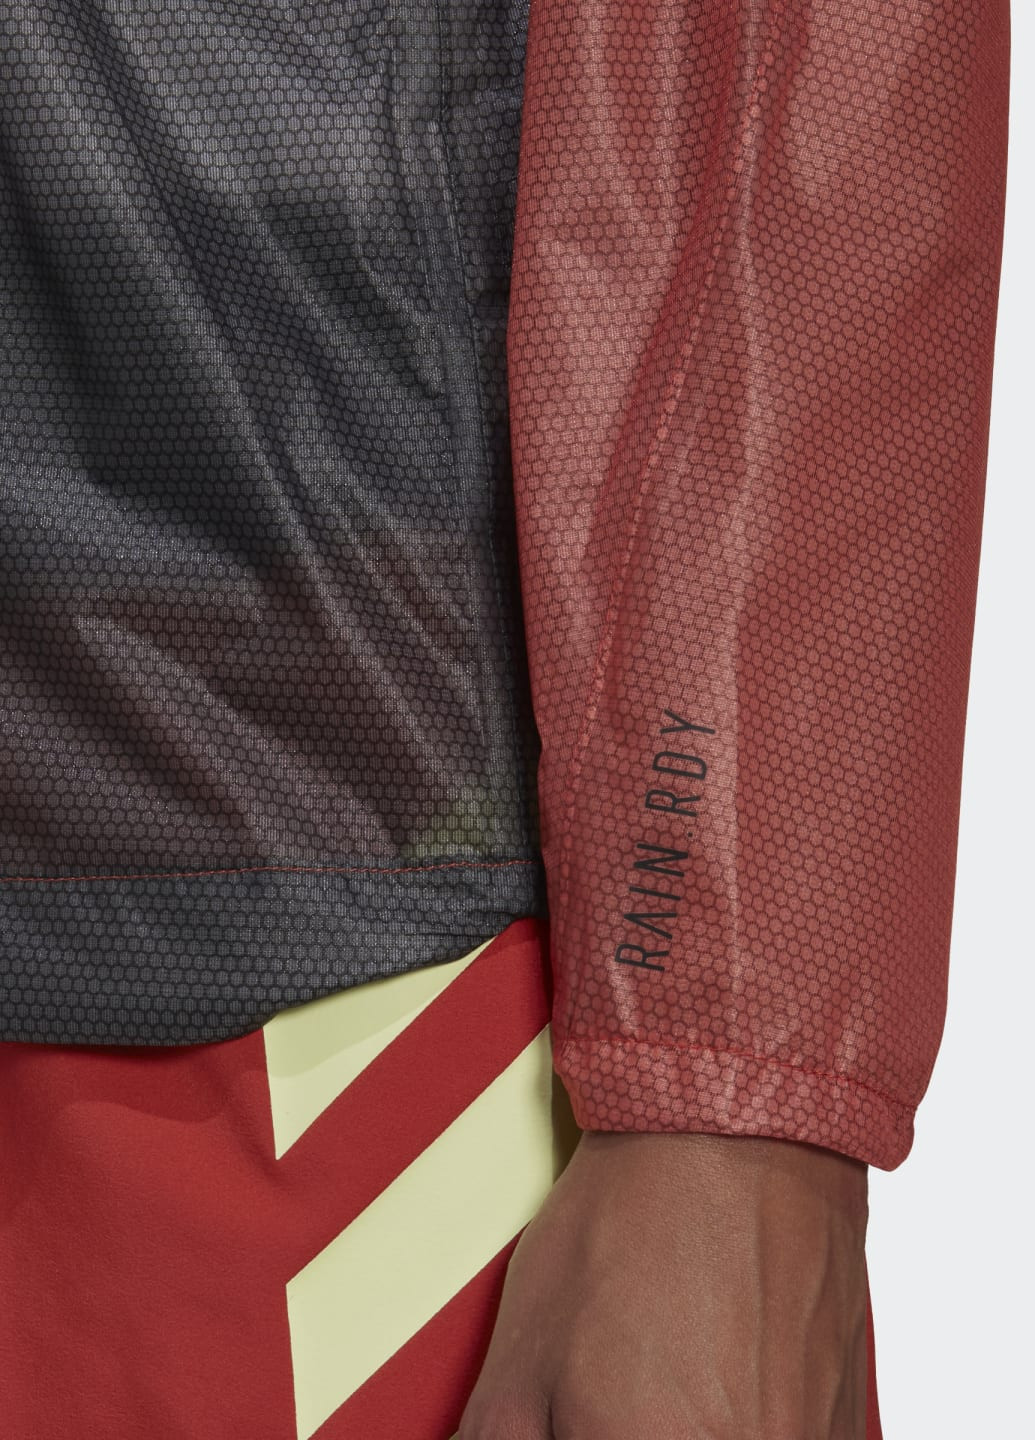 Оранжевая демисезонная куртка-дождевик terrex agravic 2.5-layer adidas